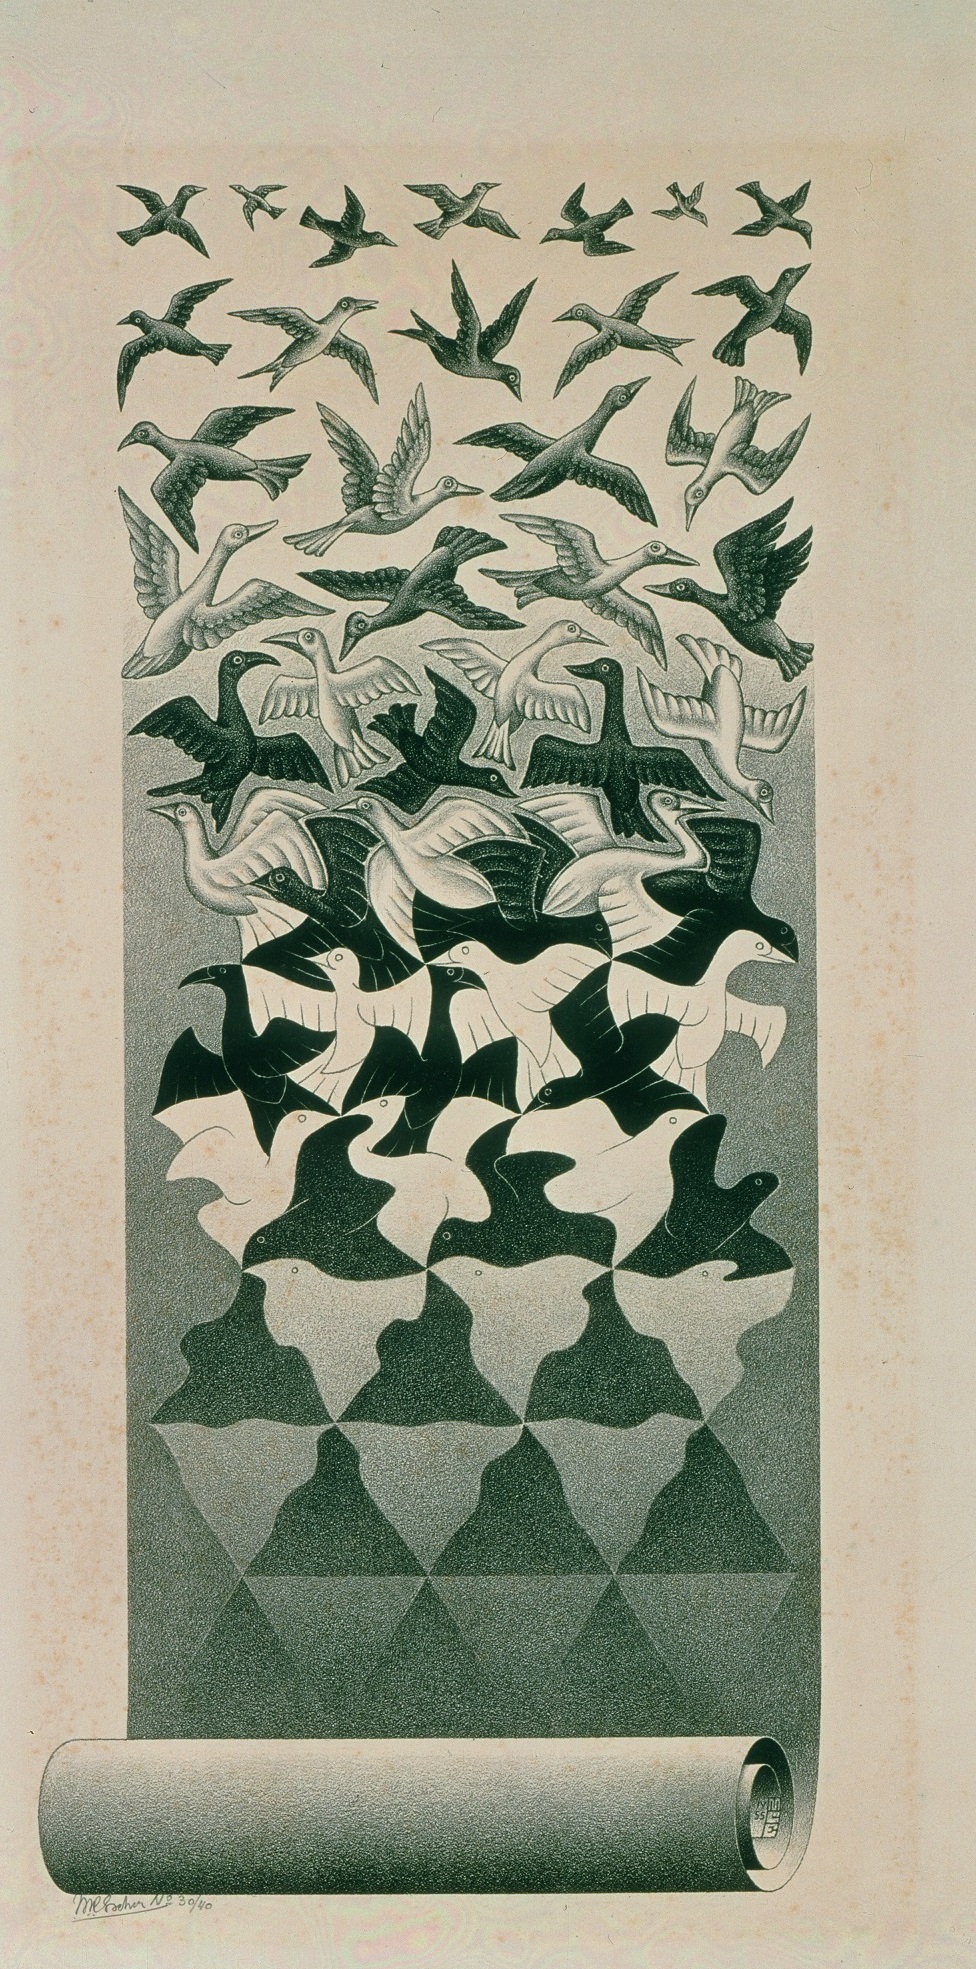 M.C. Escher, Liberation, 1955